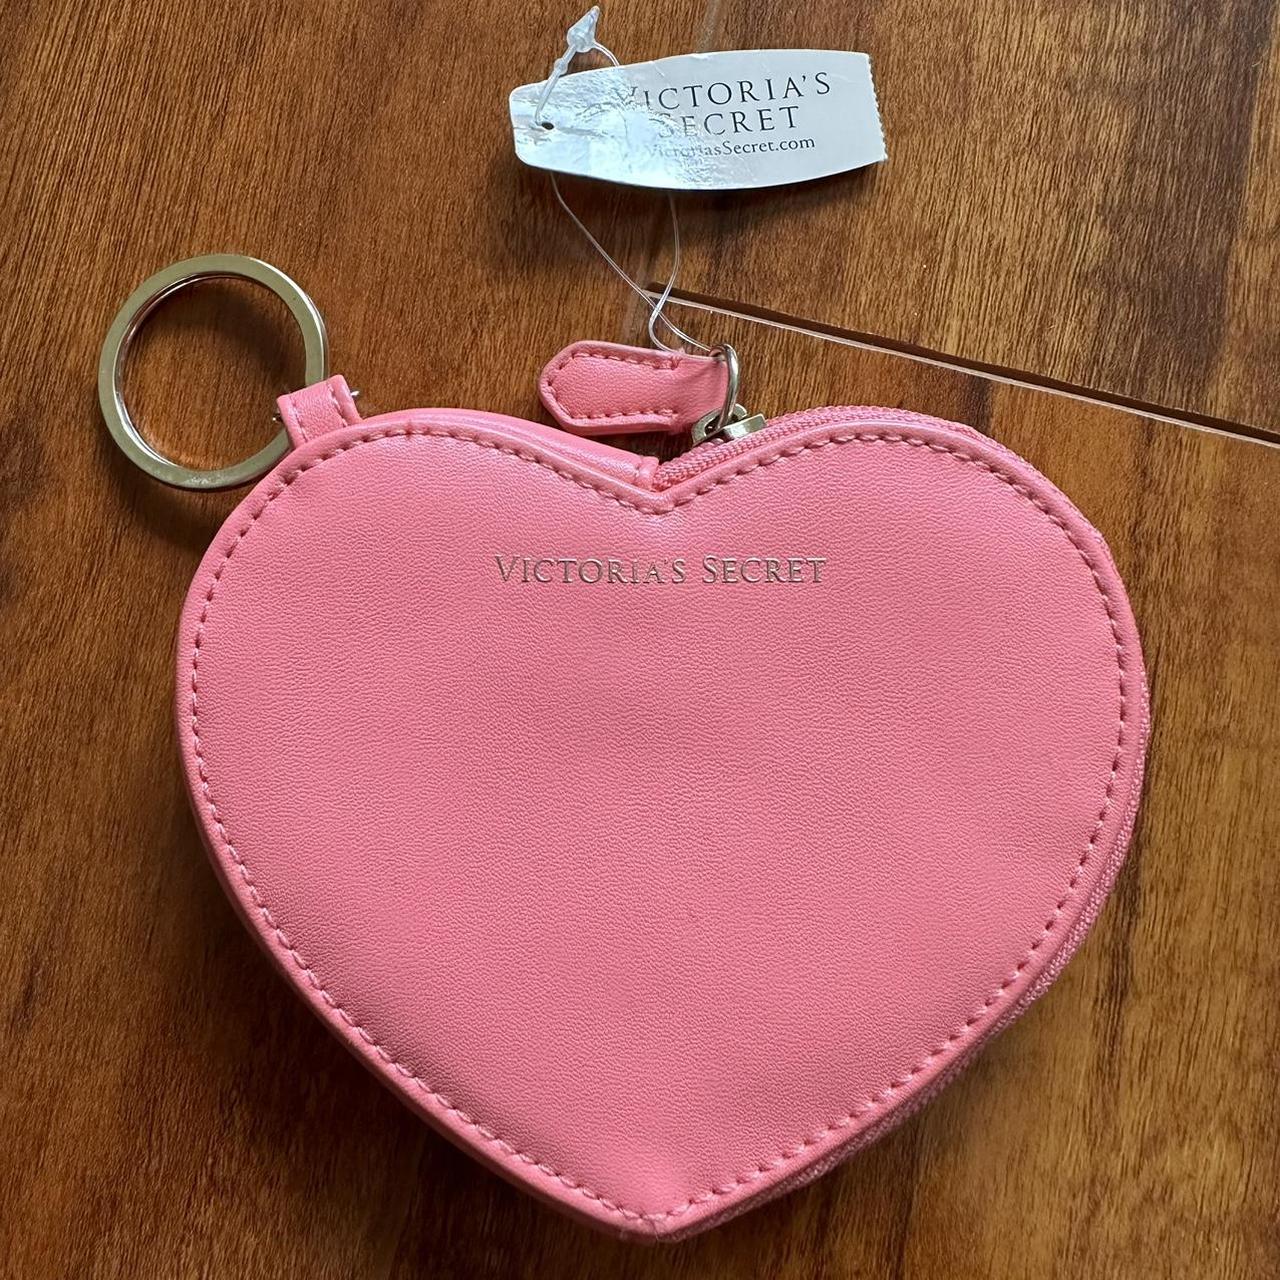 Jules Kae Heart Coin Purse Pink heart-shaped coin - Depop